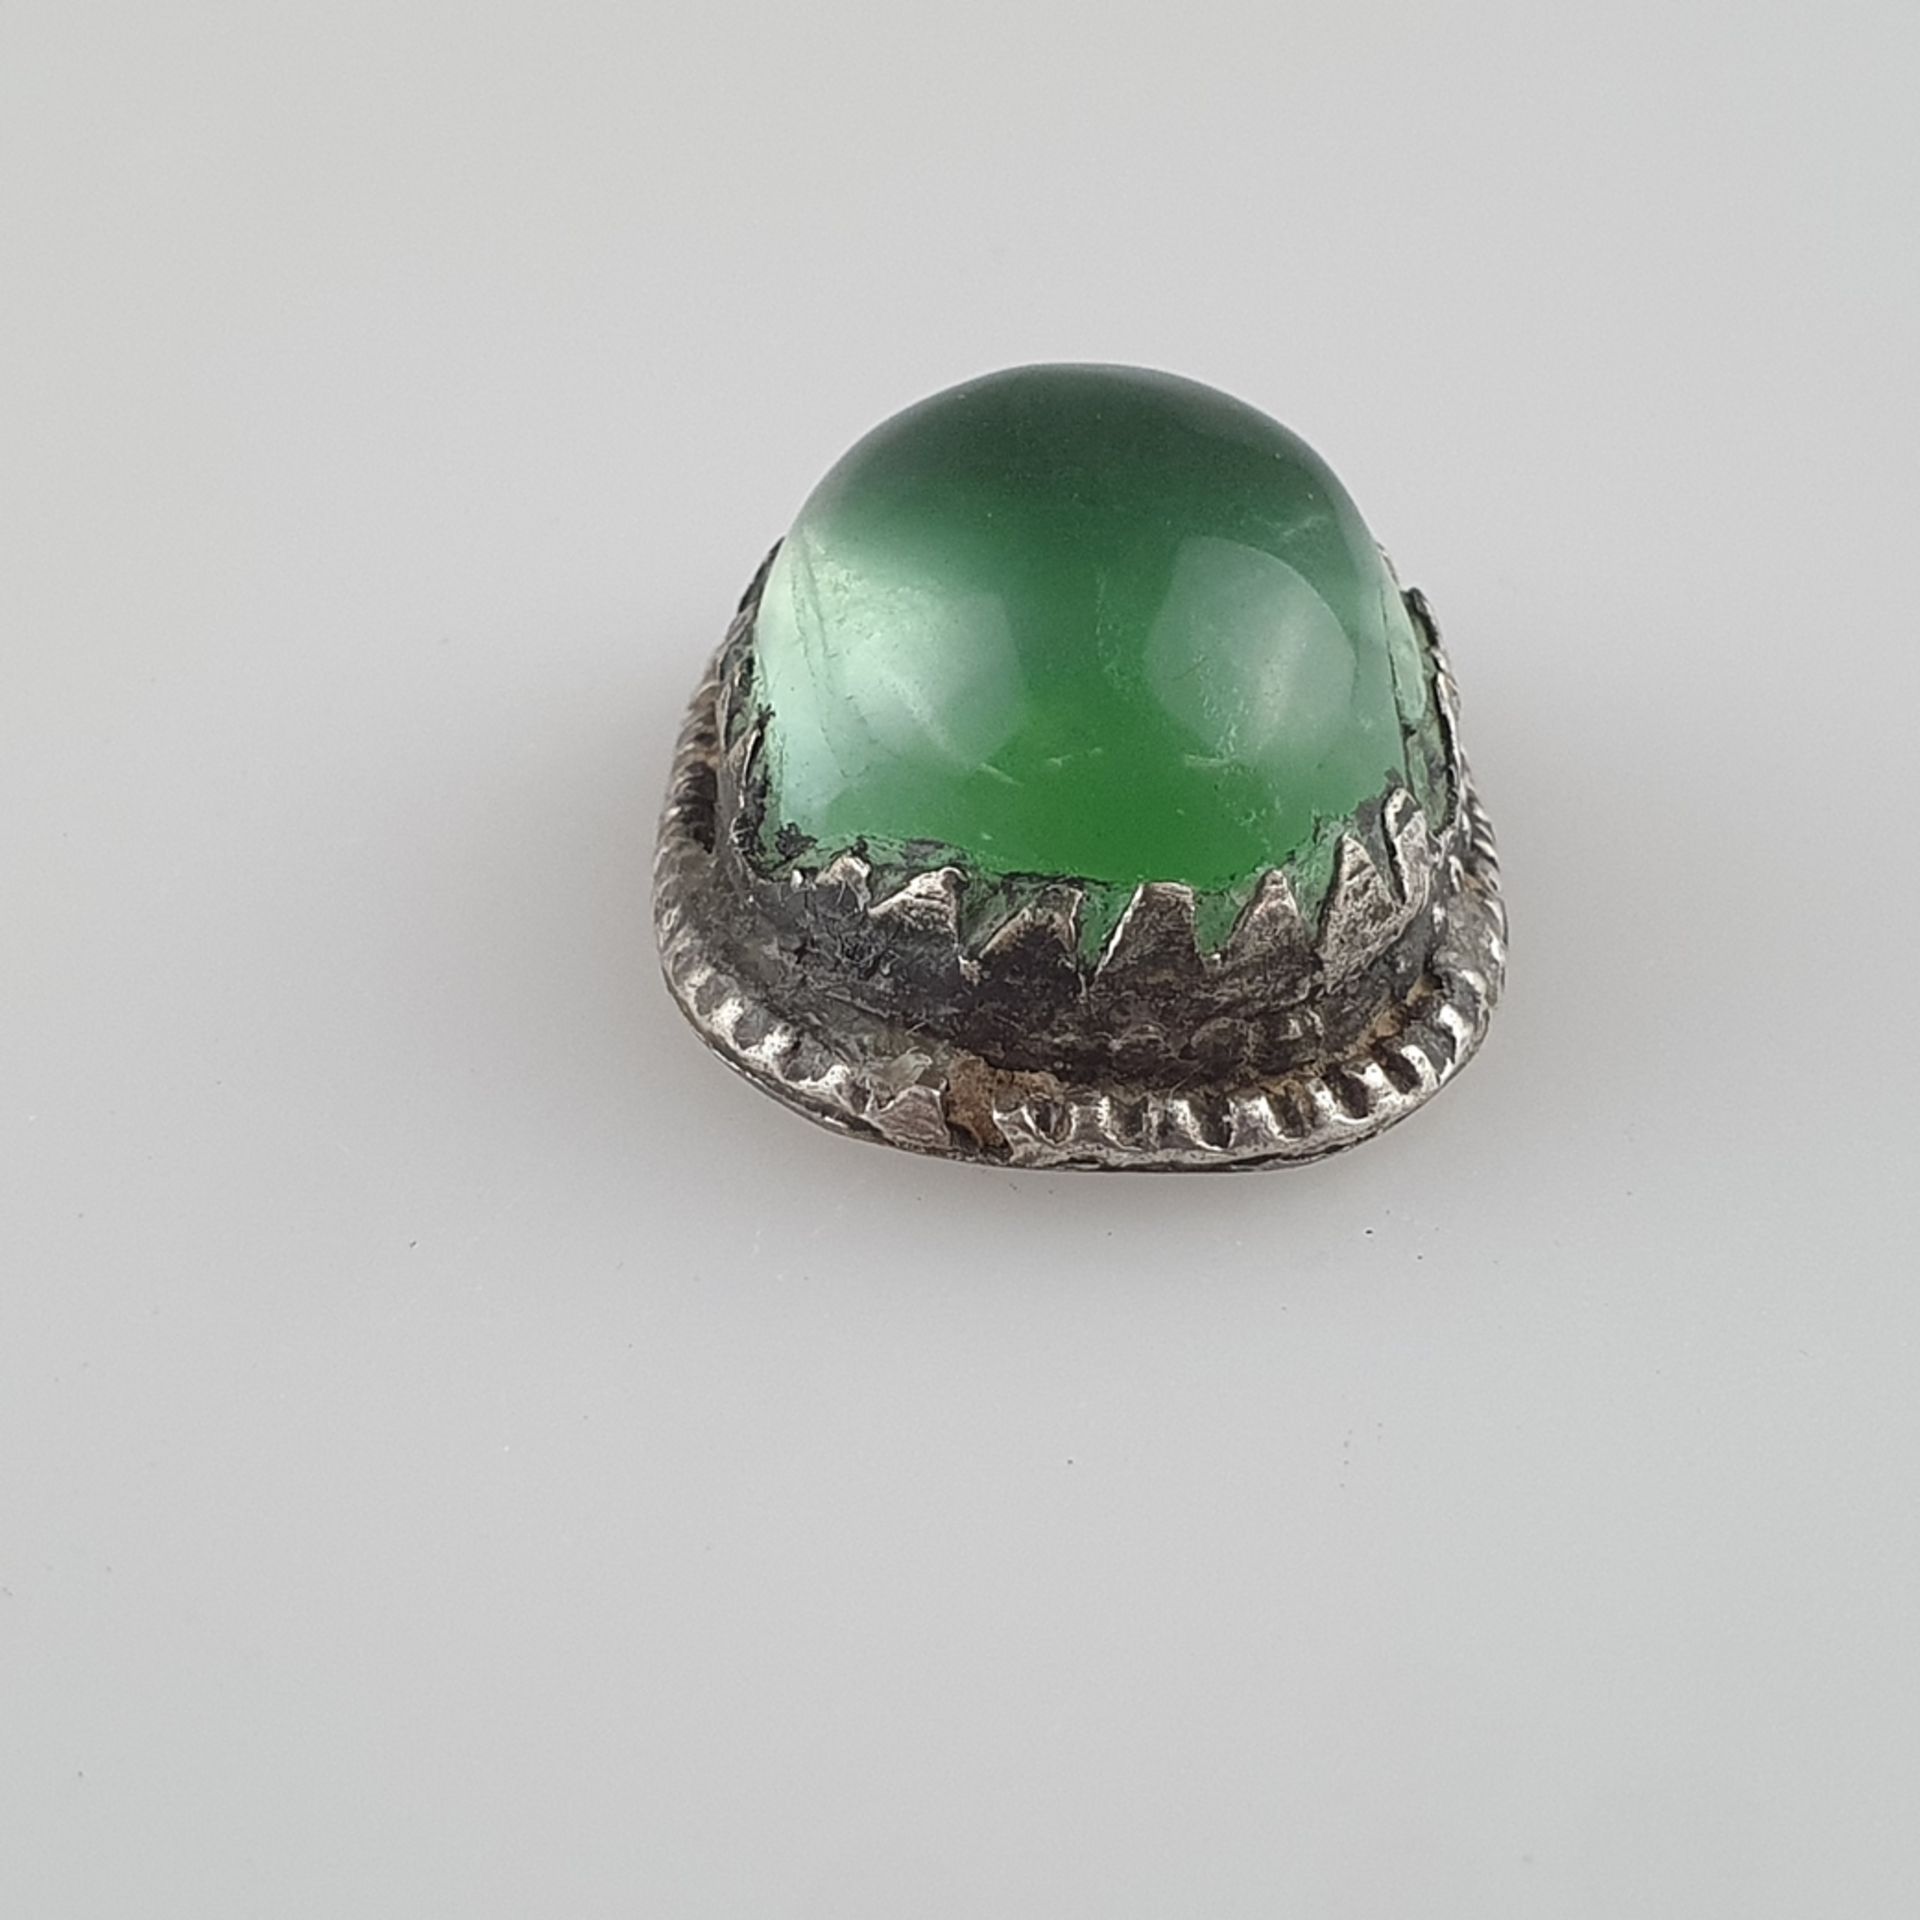 Jadecabochon in Silberfassung - ovaler Cabochon von hellgrüner Farbe in verzierter Silberfassung, c - Bild 4 aus 5